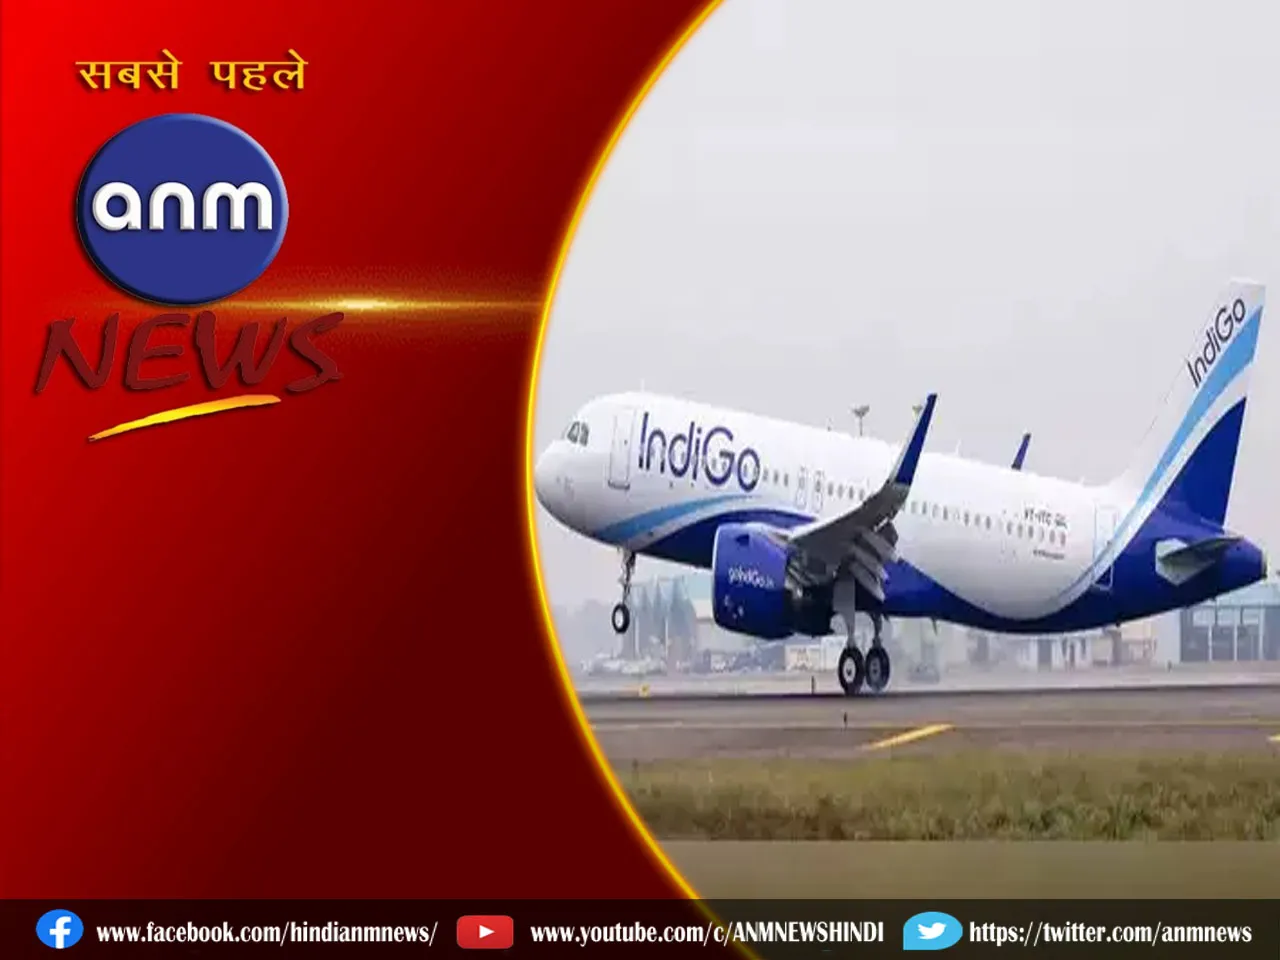 अब चिकित्सा के लिए चेन्नई यात्रा आसान, अंडाल दुर्गापुर एयरपोर्ट से फ्लाइट शुरू